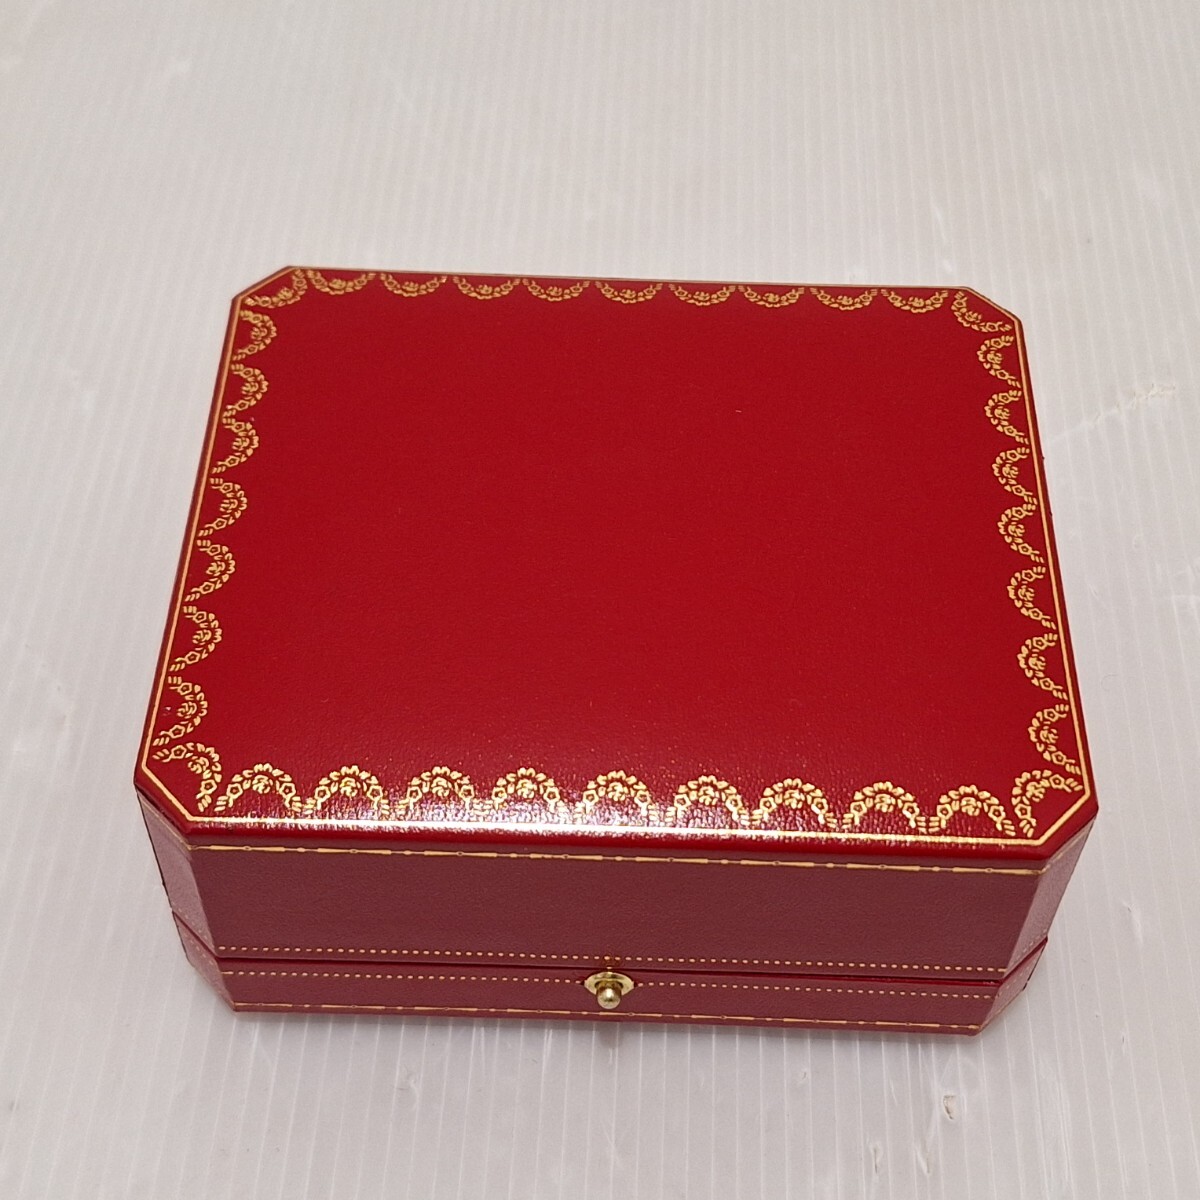 D(0430c1) Cartier カルティエ 空箱 空き箱 CO 1017 時計 クォーツ 用 レディース ジュエリーケース ケース ボックス BOX 箱のみ の画像5